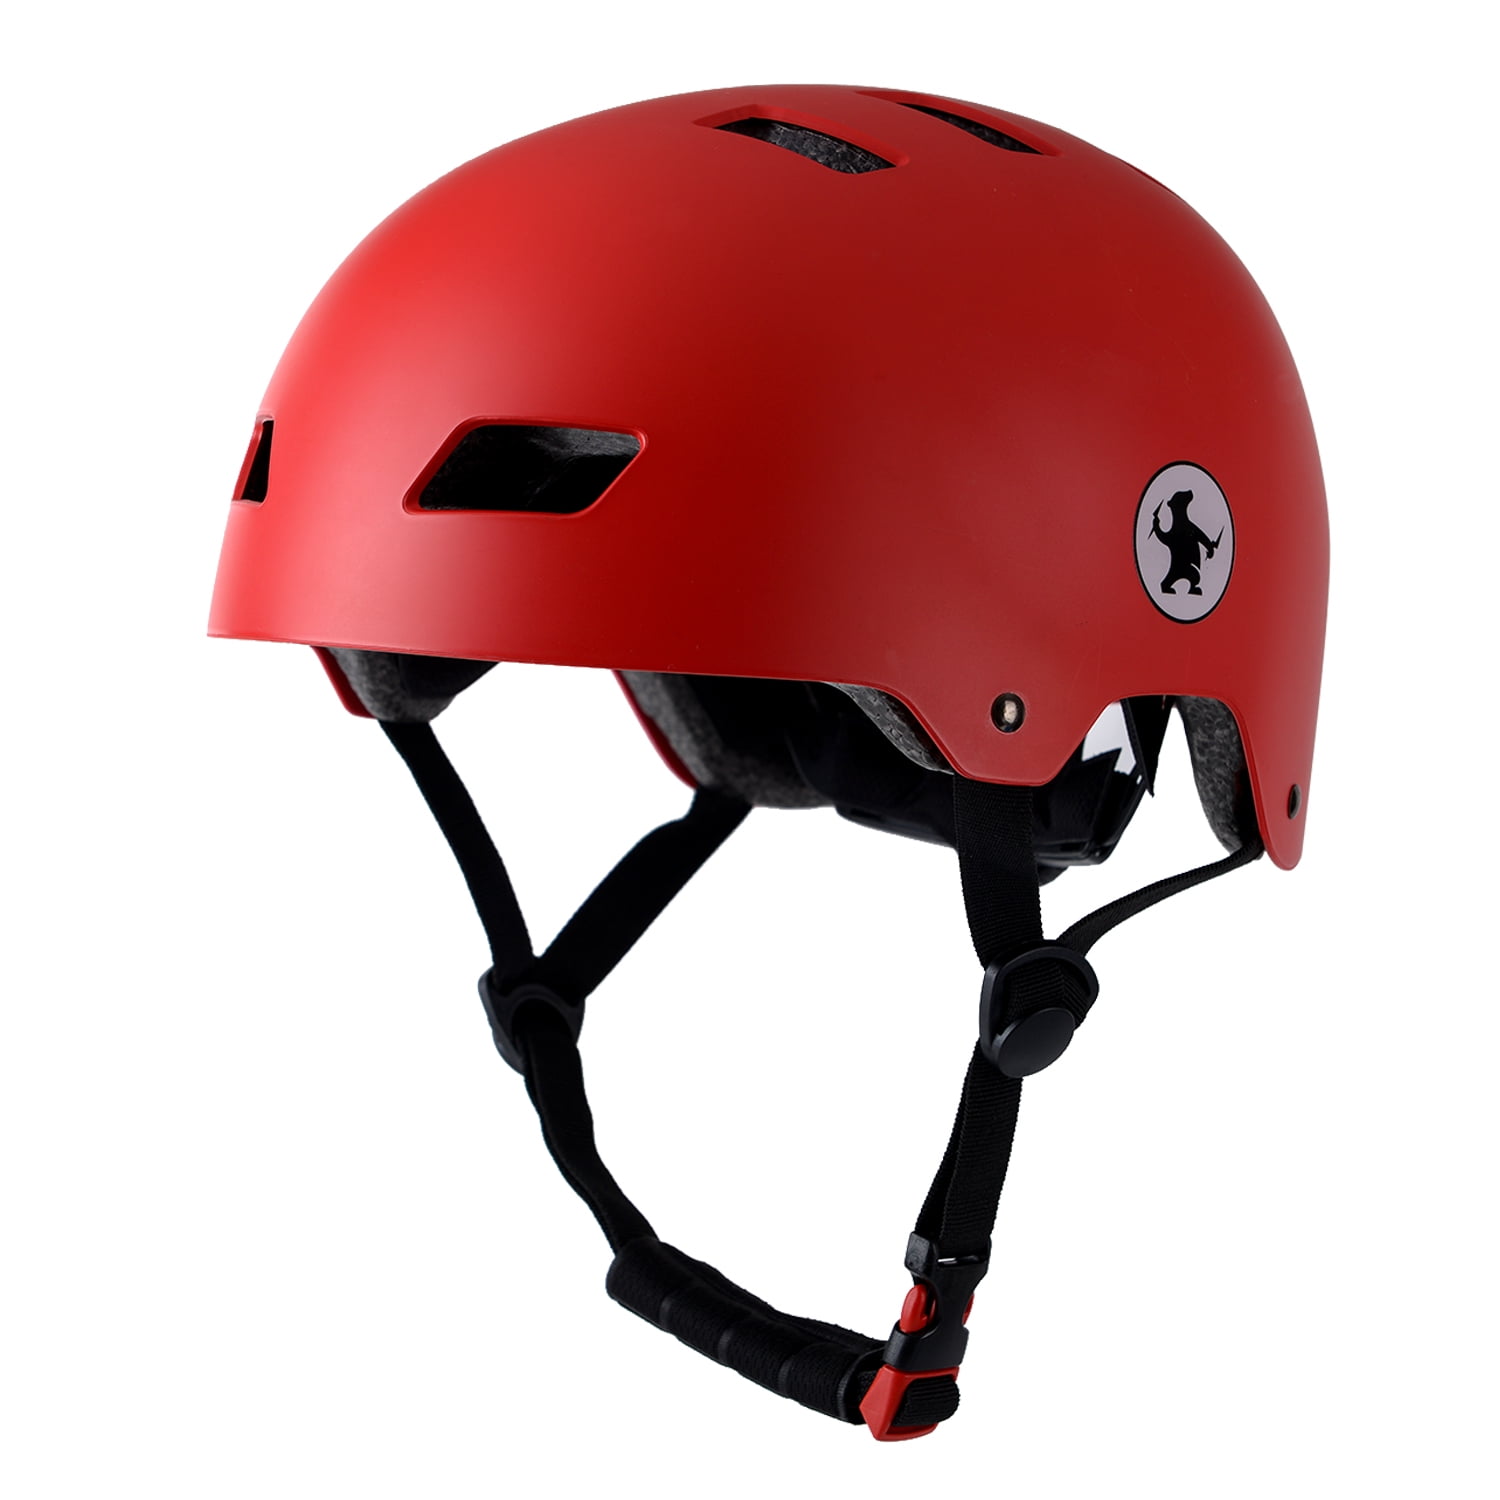 Protec Pro-Tec Ace Skateboard Snowboard Aftermarket Helmet Pads Liner Kit Set 